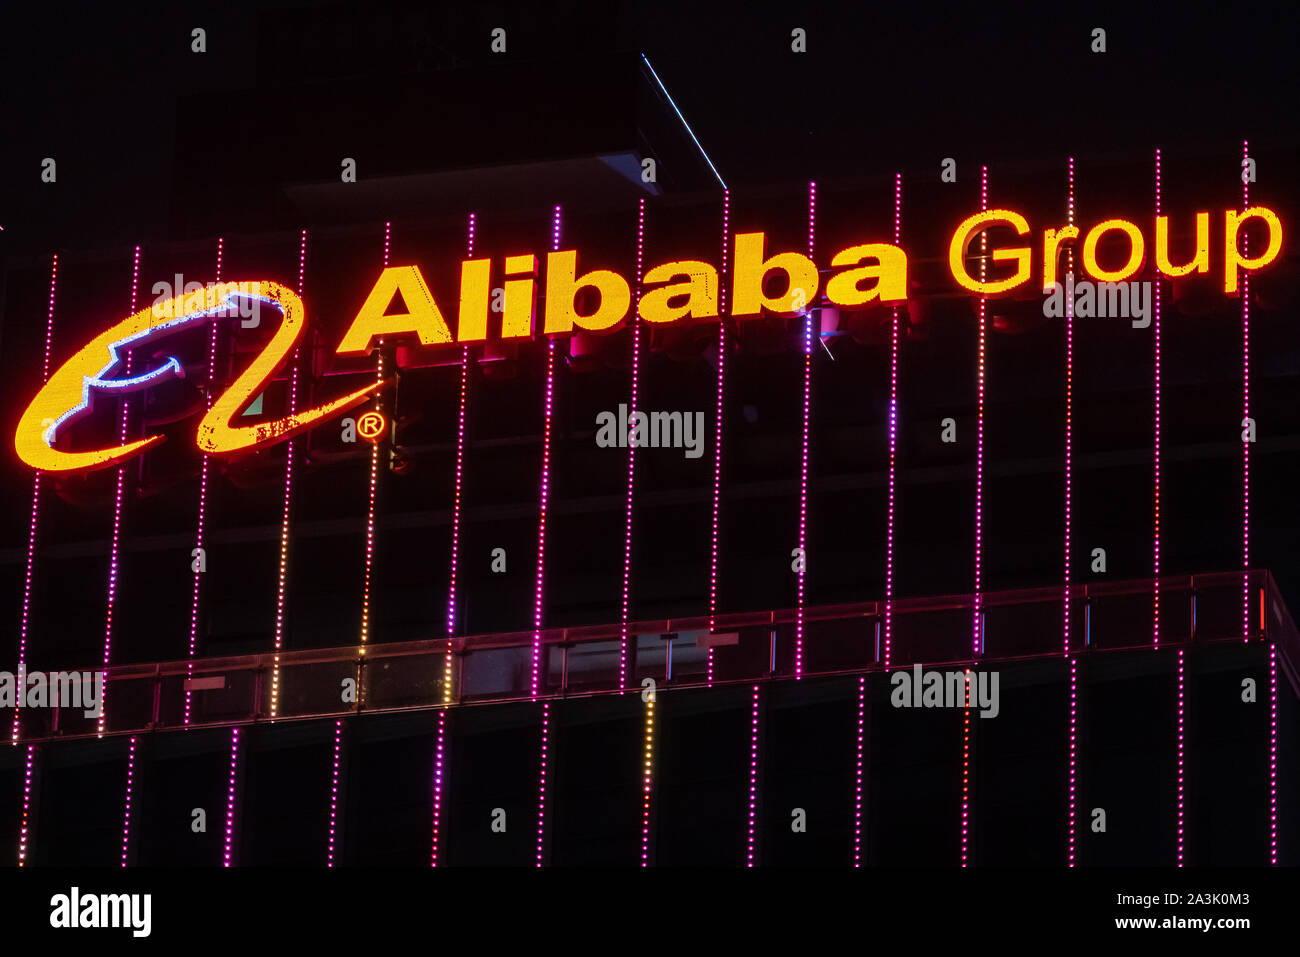 Multinazionale cinese e-commerce, retail, Internet e il conglomerato di tecnologia società holding del Gruppo Alibaba logo che si vede sulla cima di un grattacielo di notte. Foto Stock